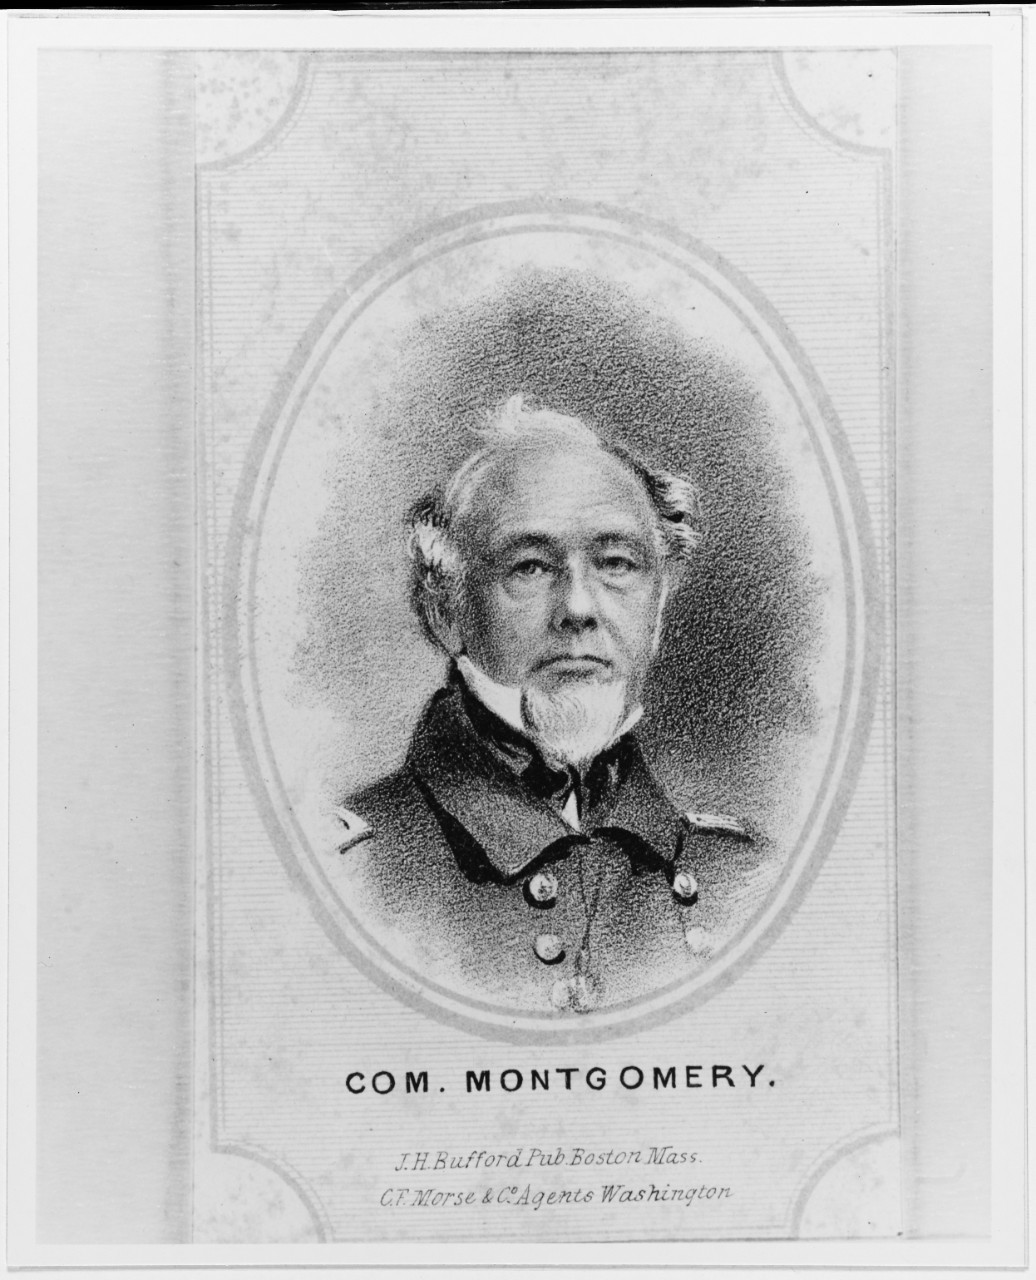 Commodore John B. Montgomery, USN